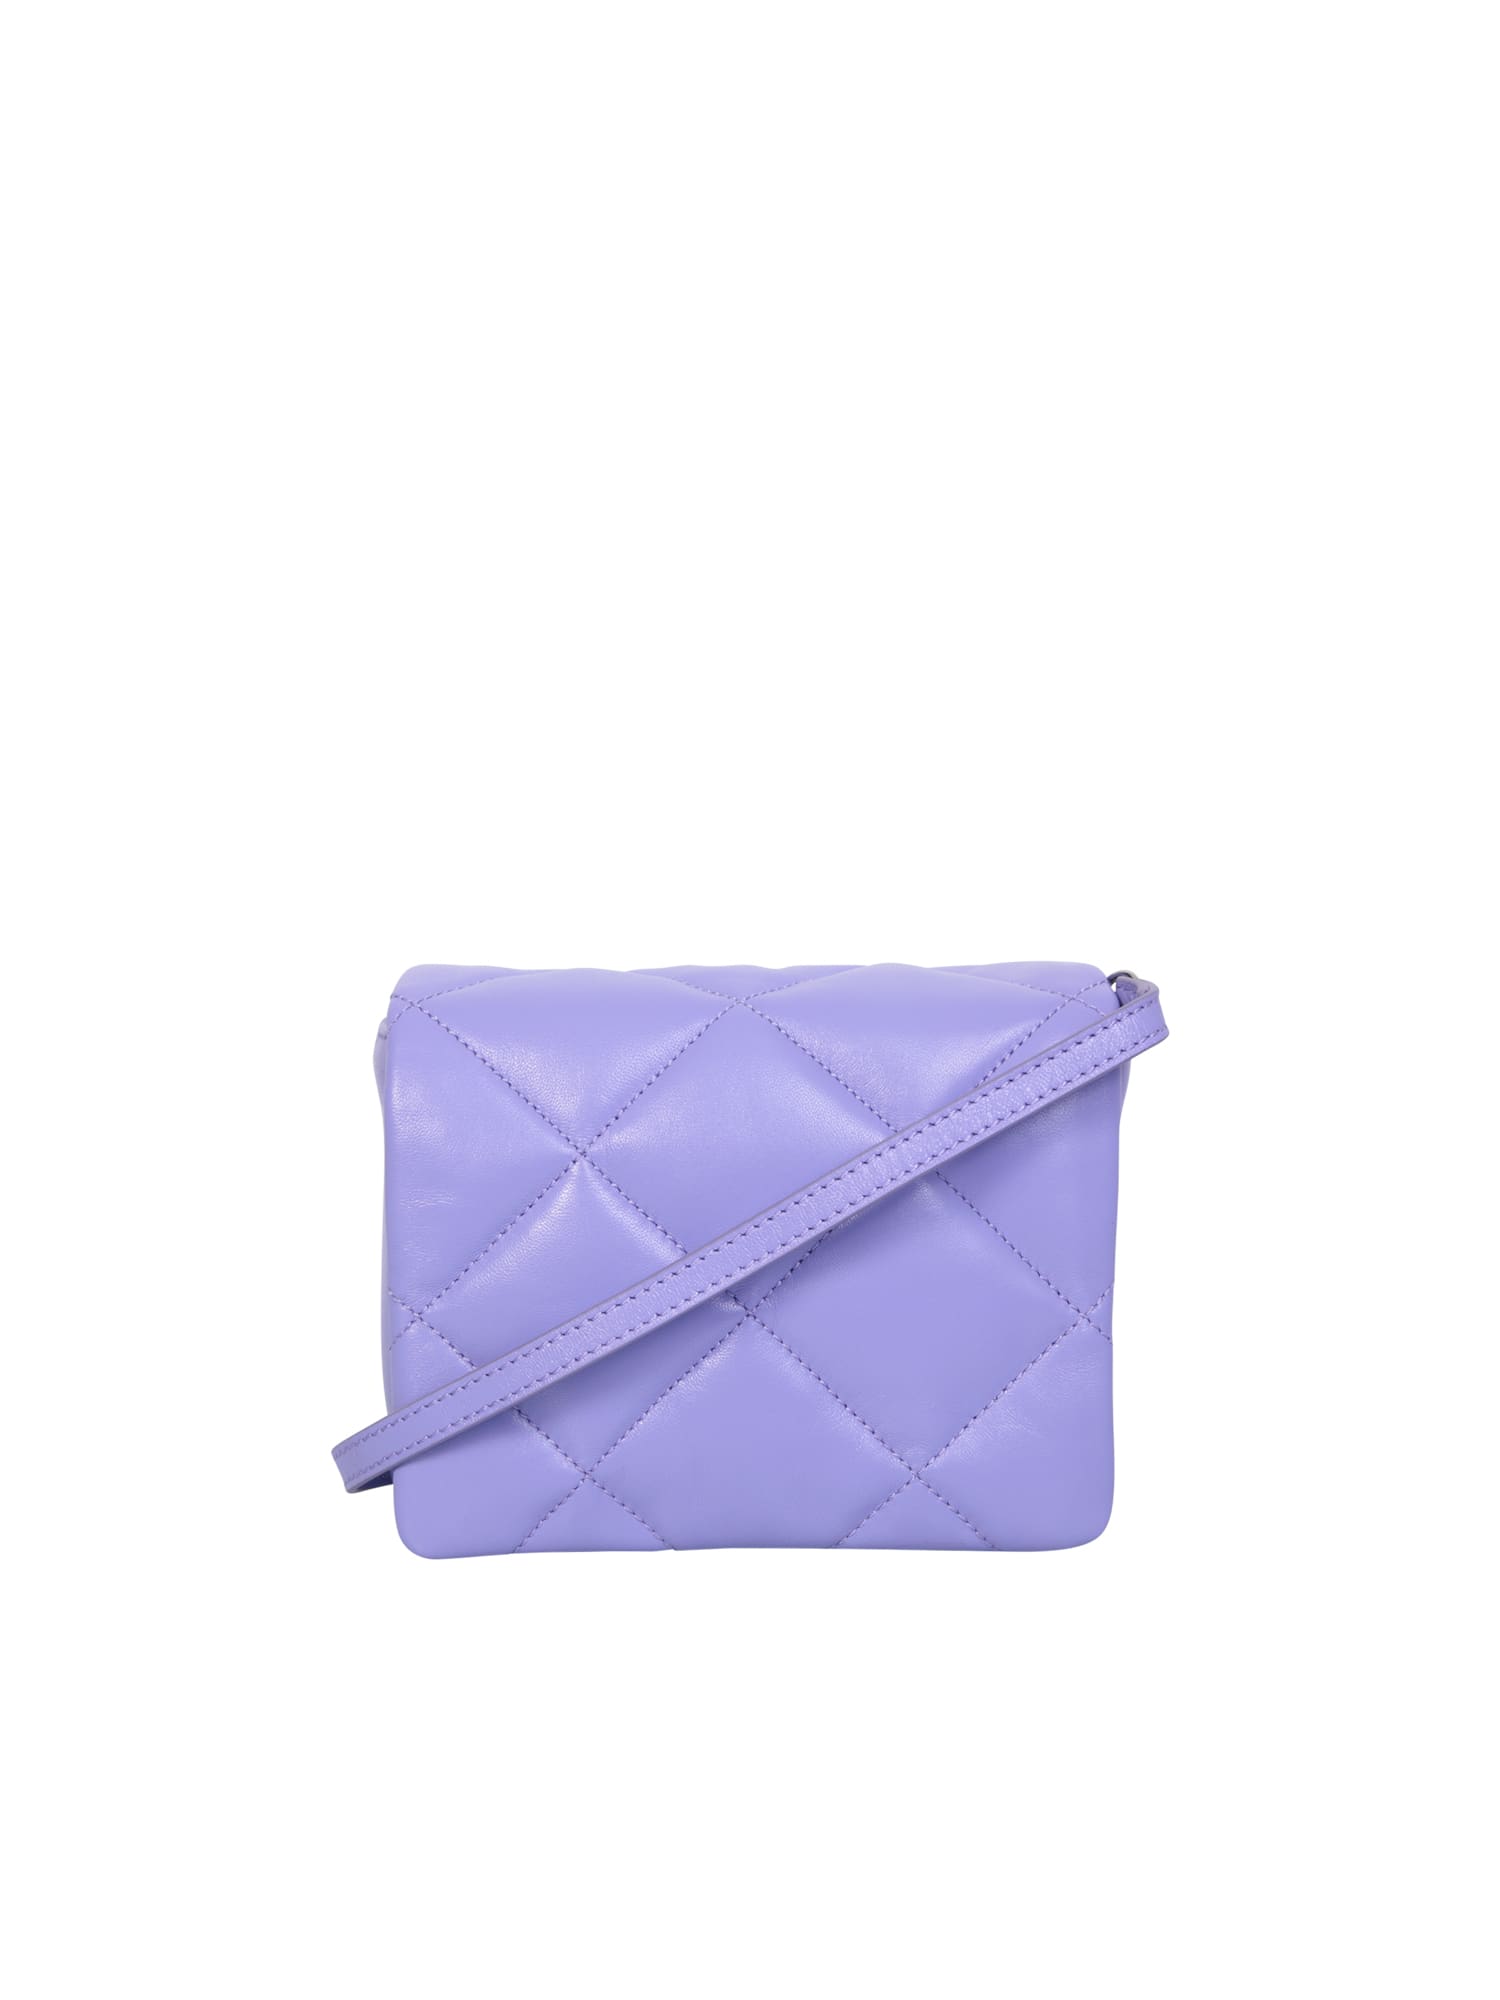 Hestia Small Lilac Bag